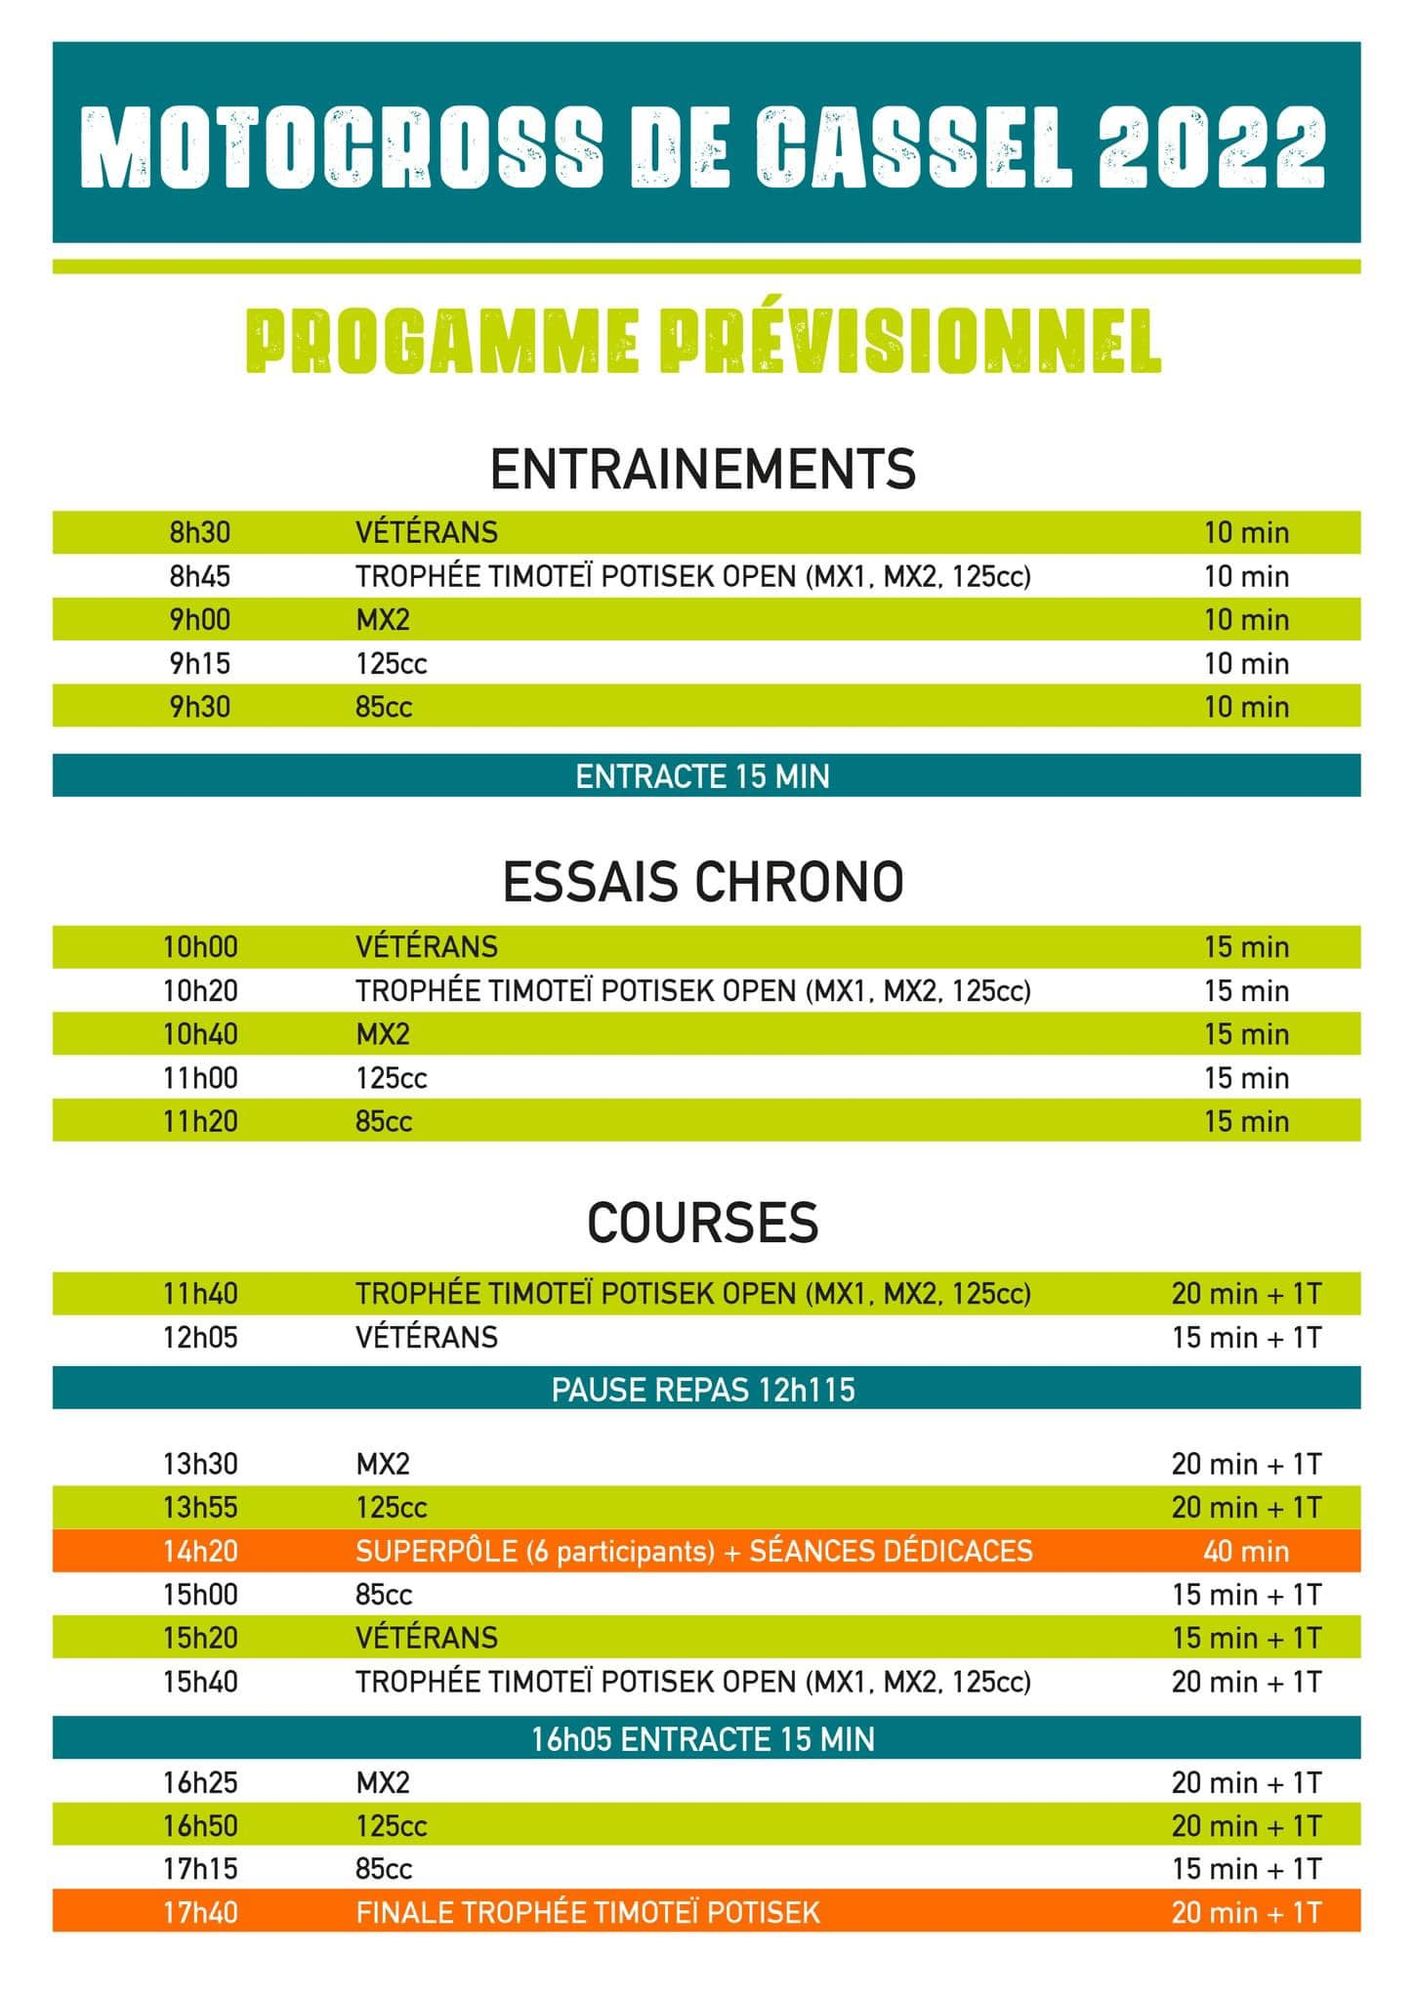 Le programme de l'édition 2022 du motocross de Cassel